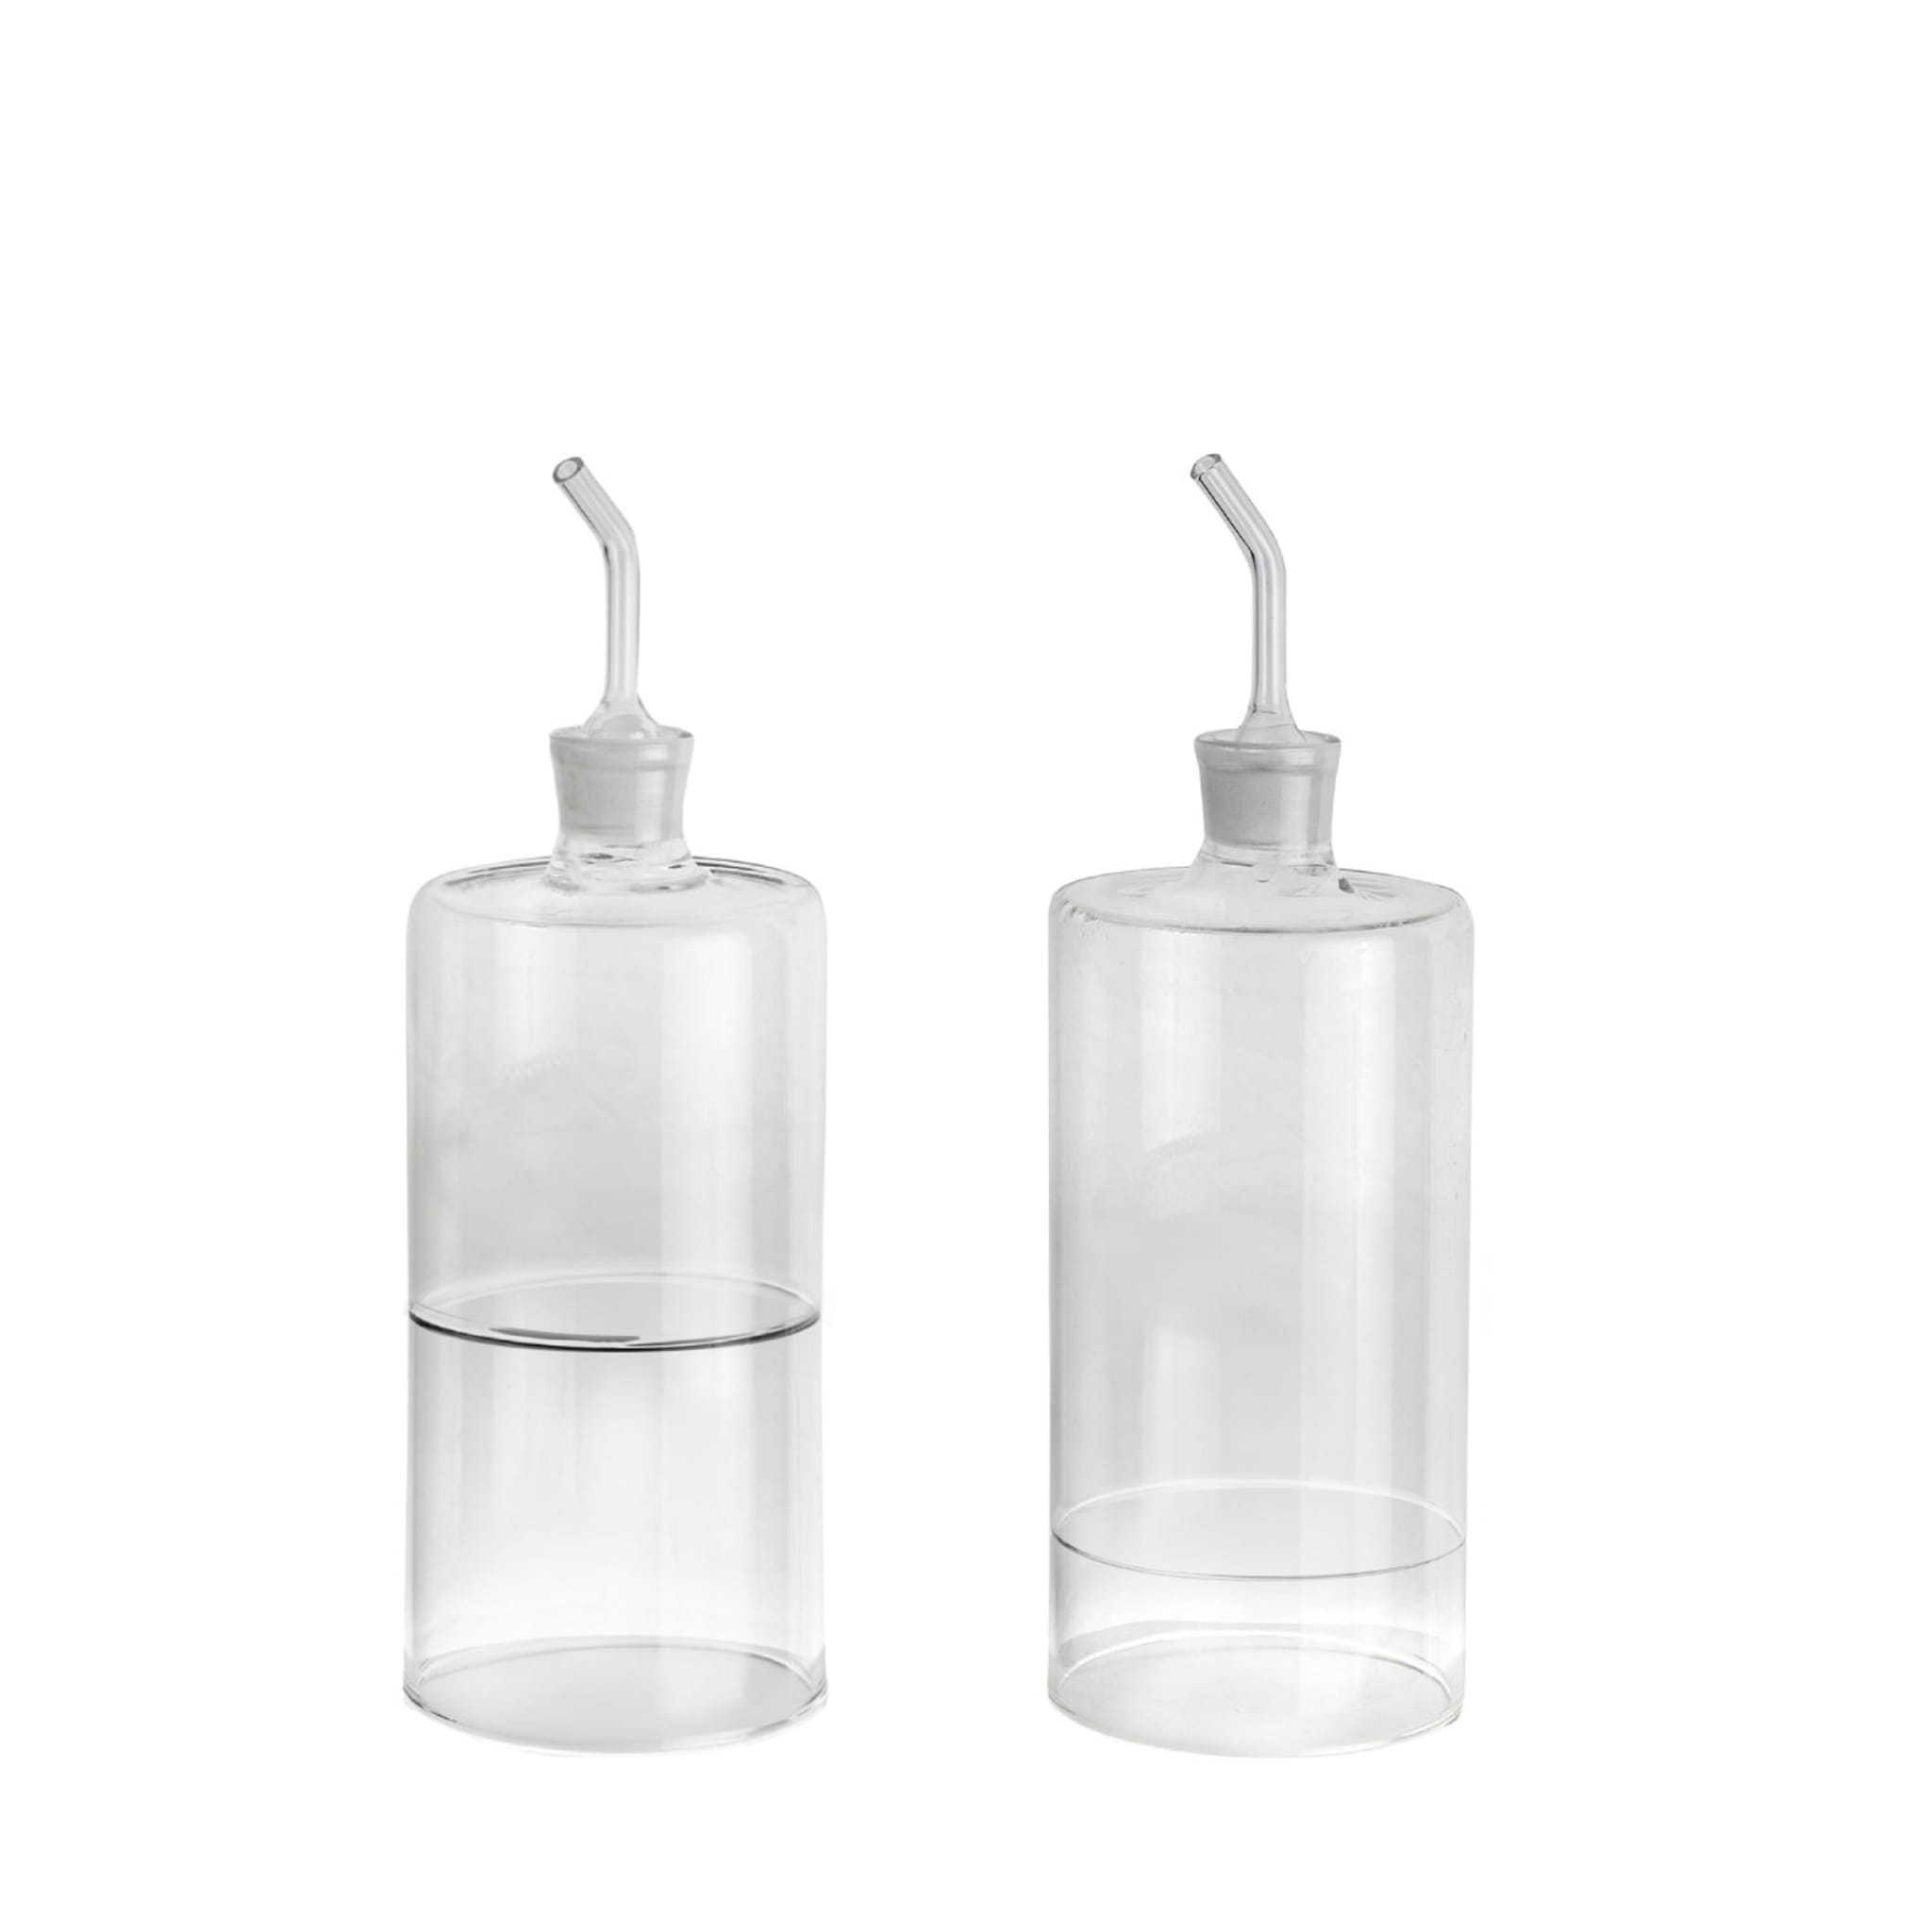 Stile Set of Oil and Vinegar Glass Bottles - Main view